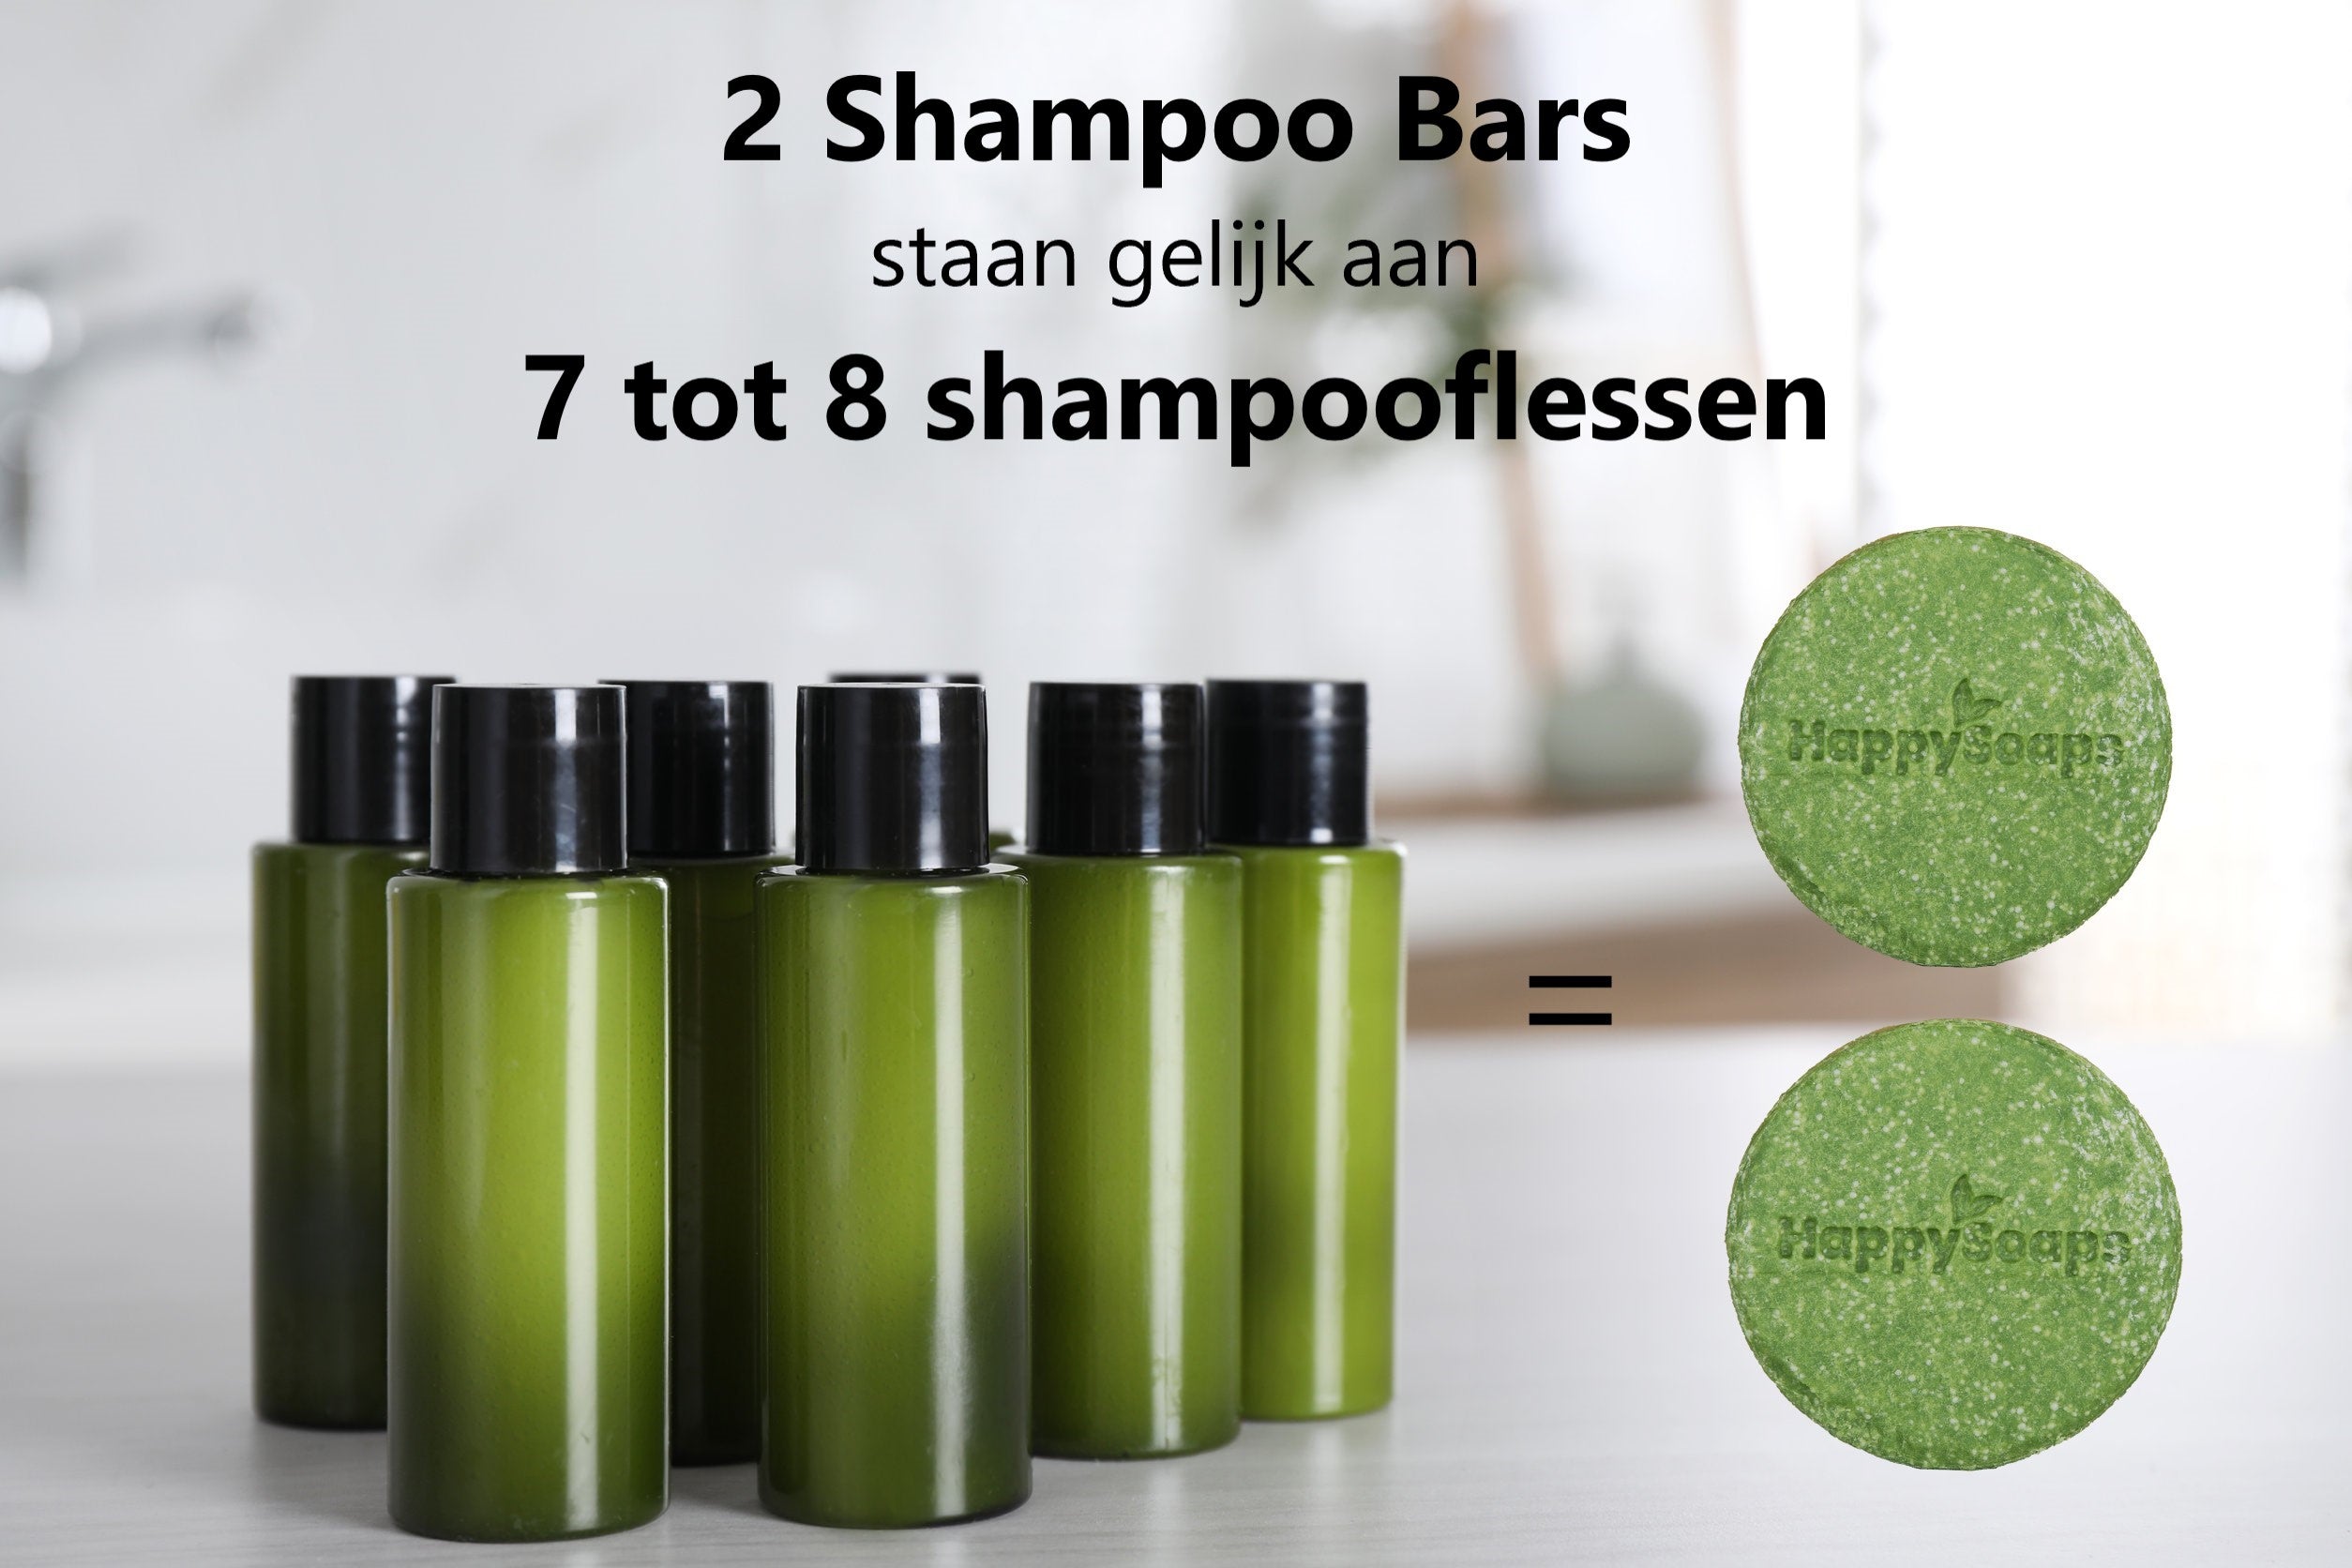 2 Shampoo Bars staan gelijk aan 7 tot 8 shampooflessen